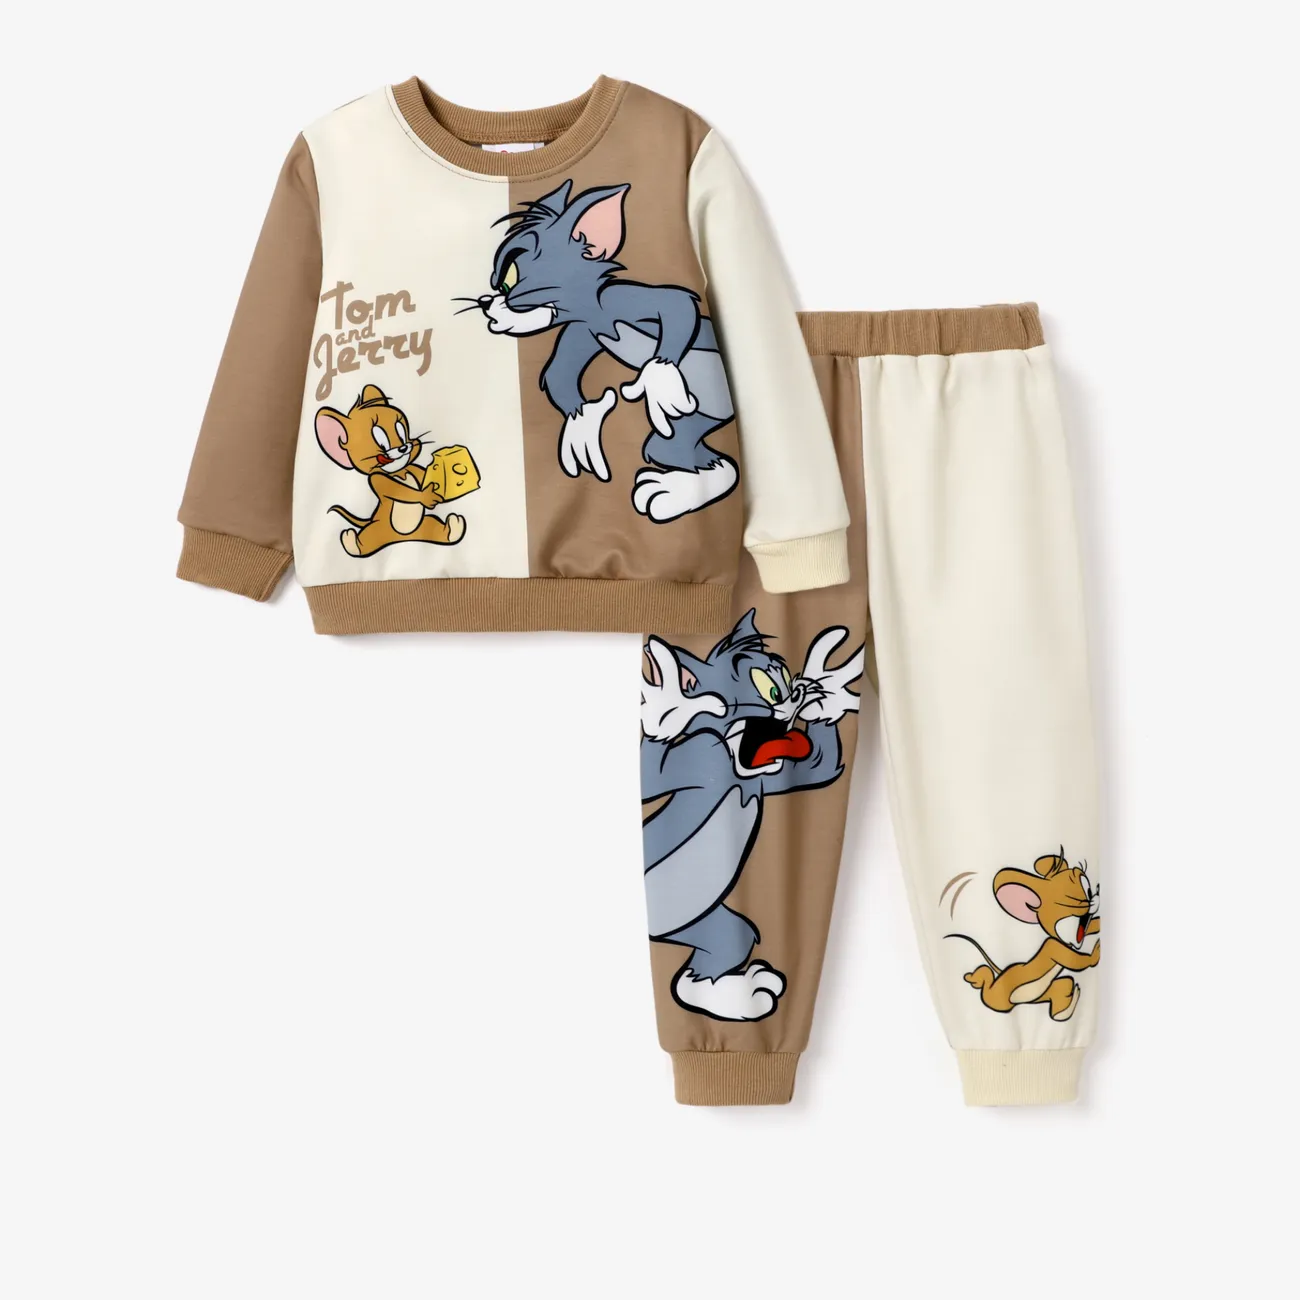 Tom and Jerry Bambino piccolo Ragazzo Infantile set di felpe Multicolore big image 1